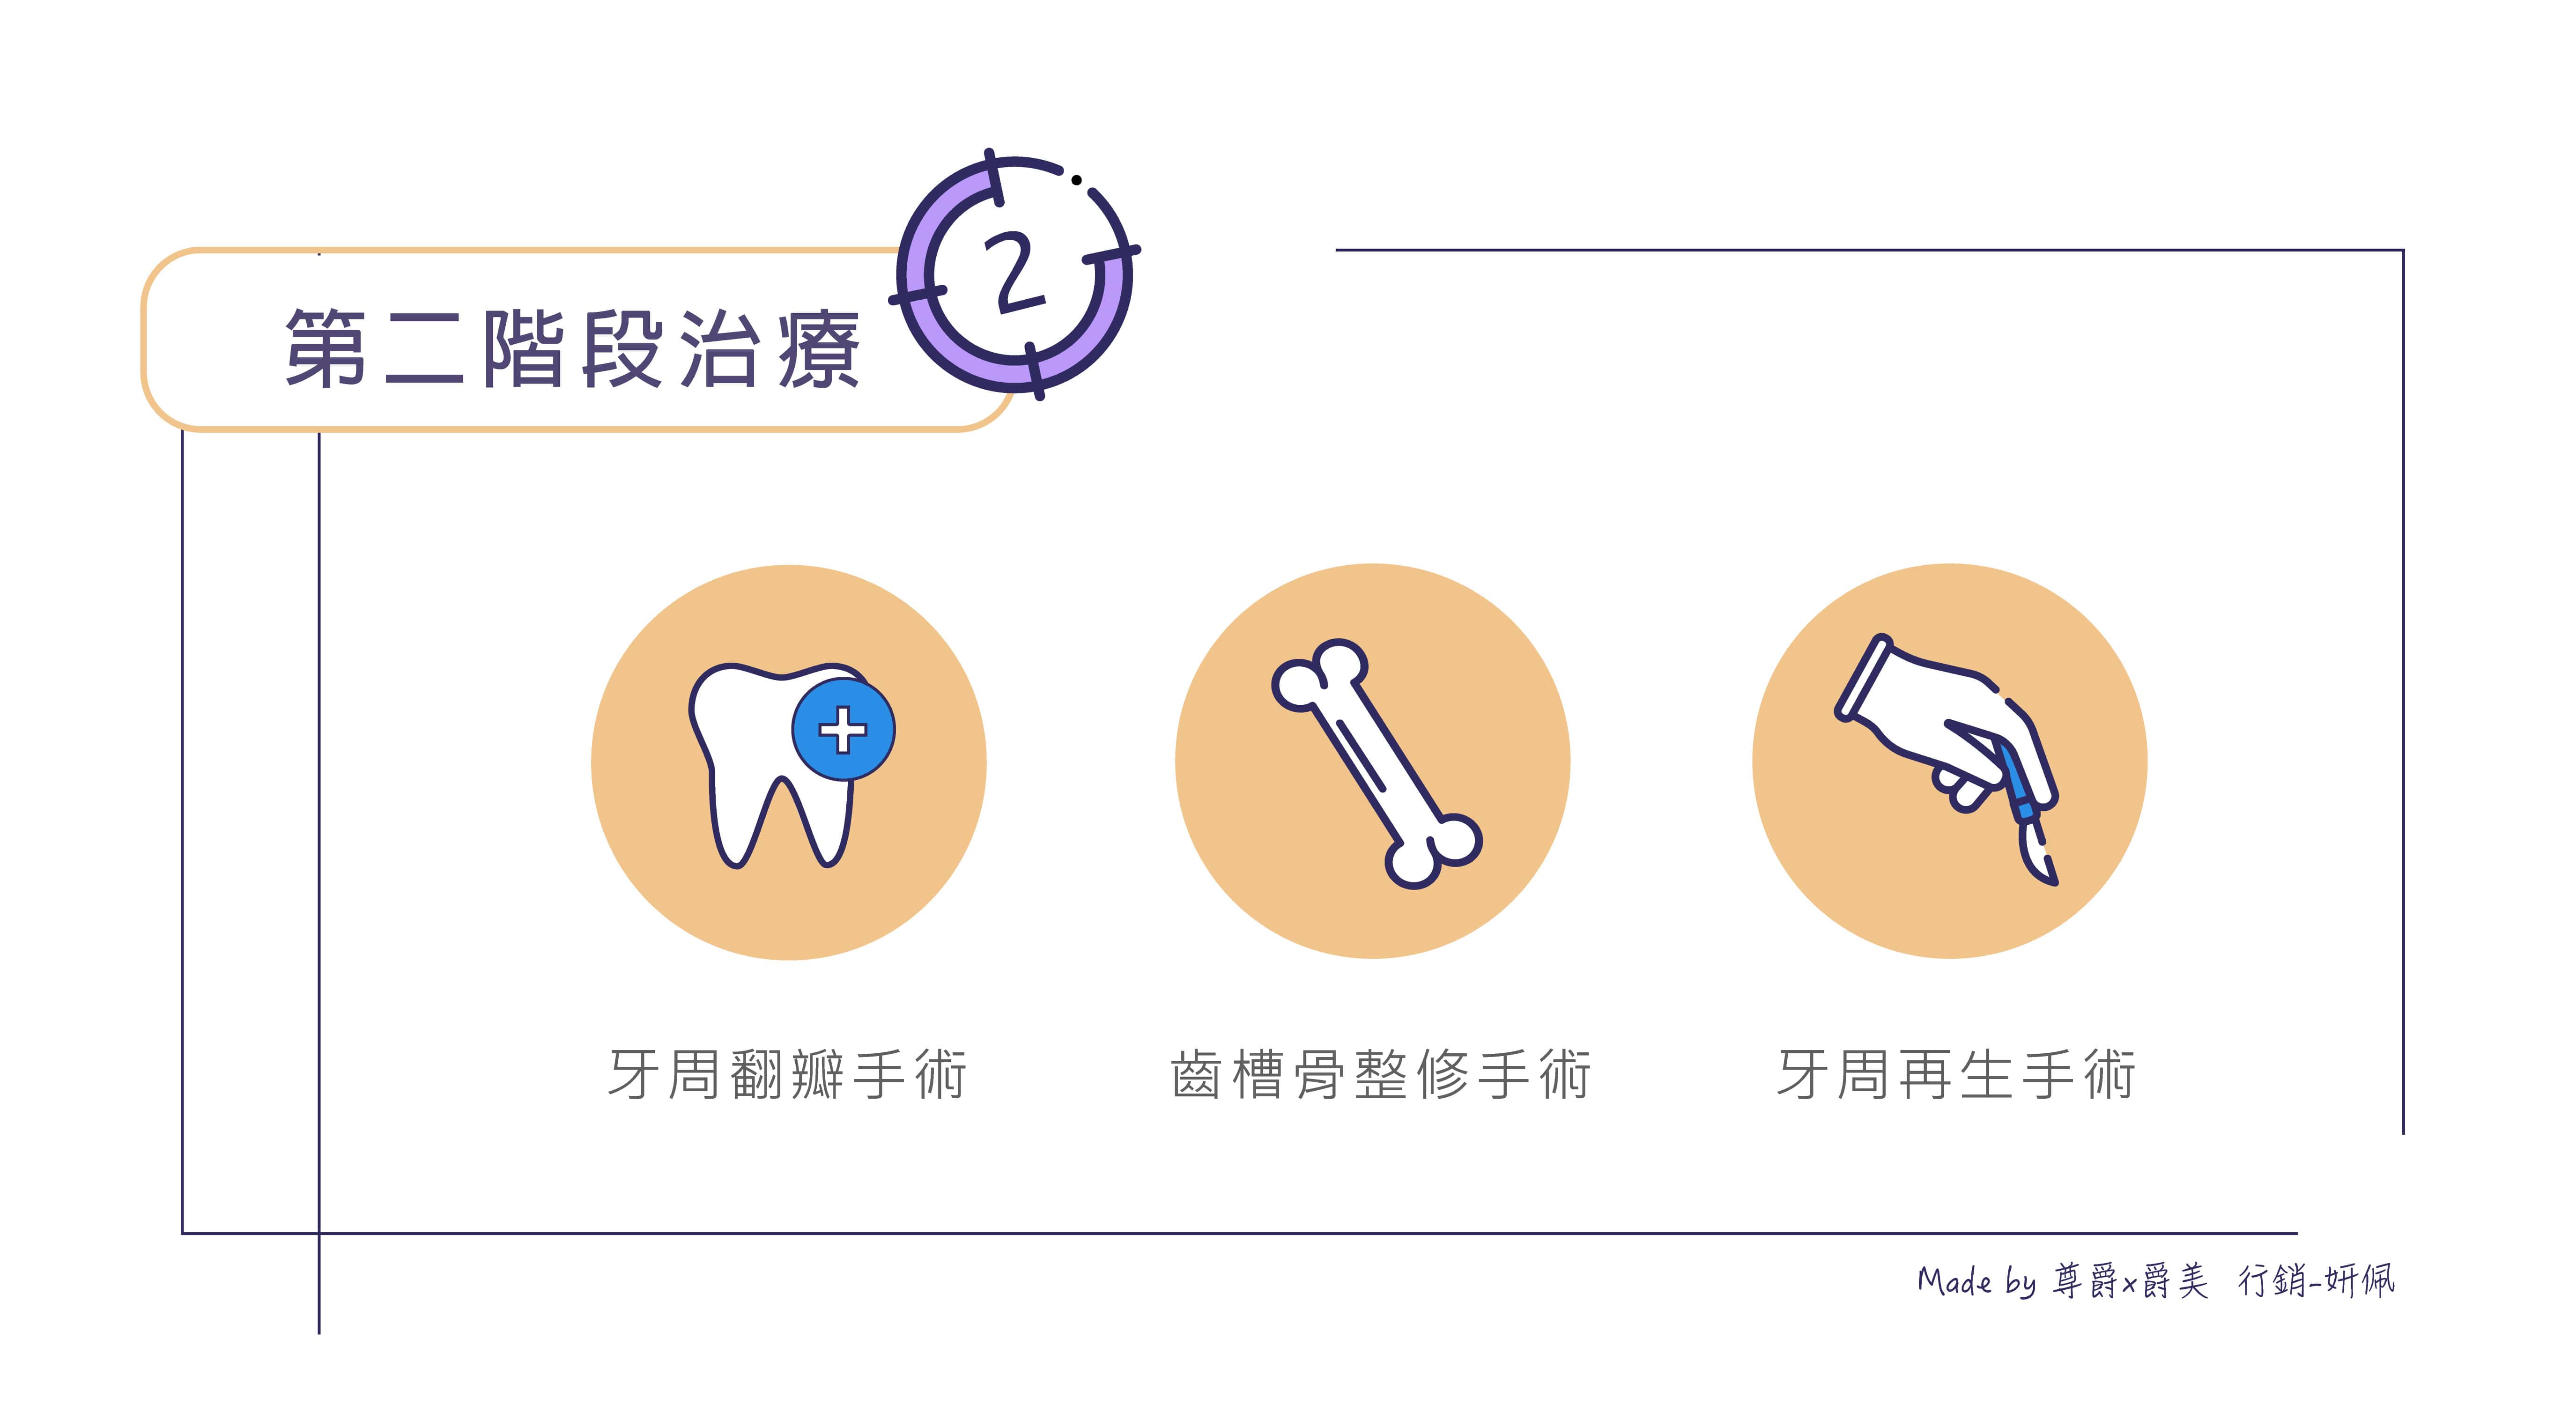 periodontal-disease 牙周病 爵美牙醫 尊爵牙醫